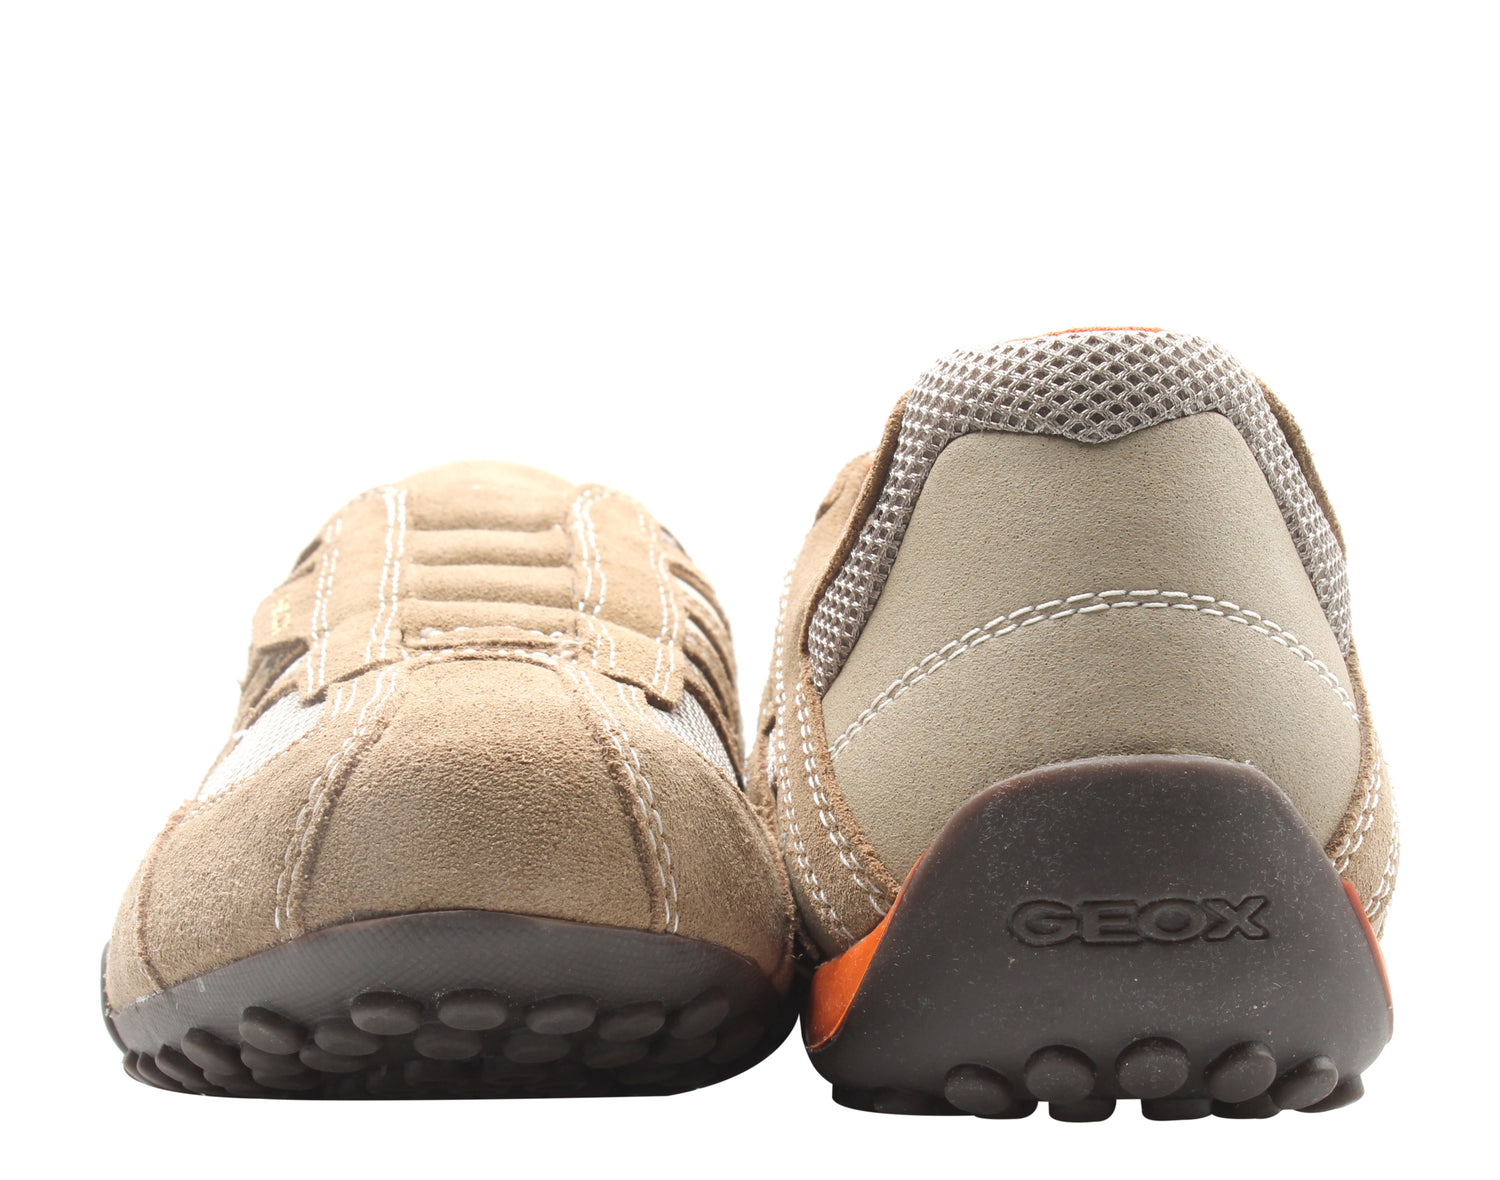 Geox Snake Slip-On Men's Casual Sneakers